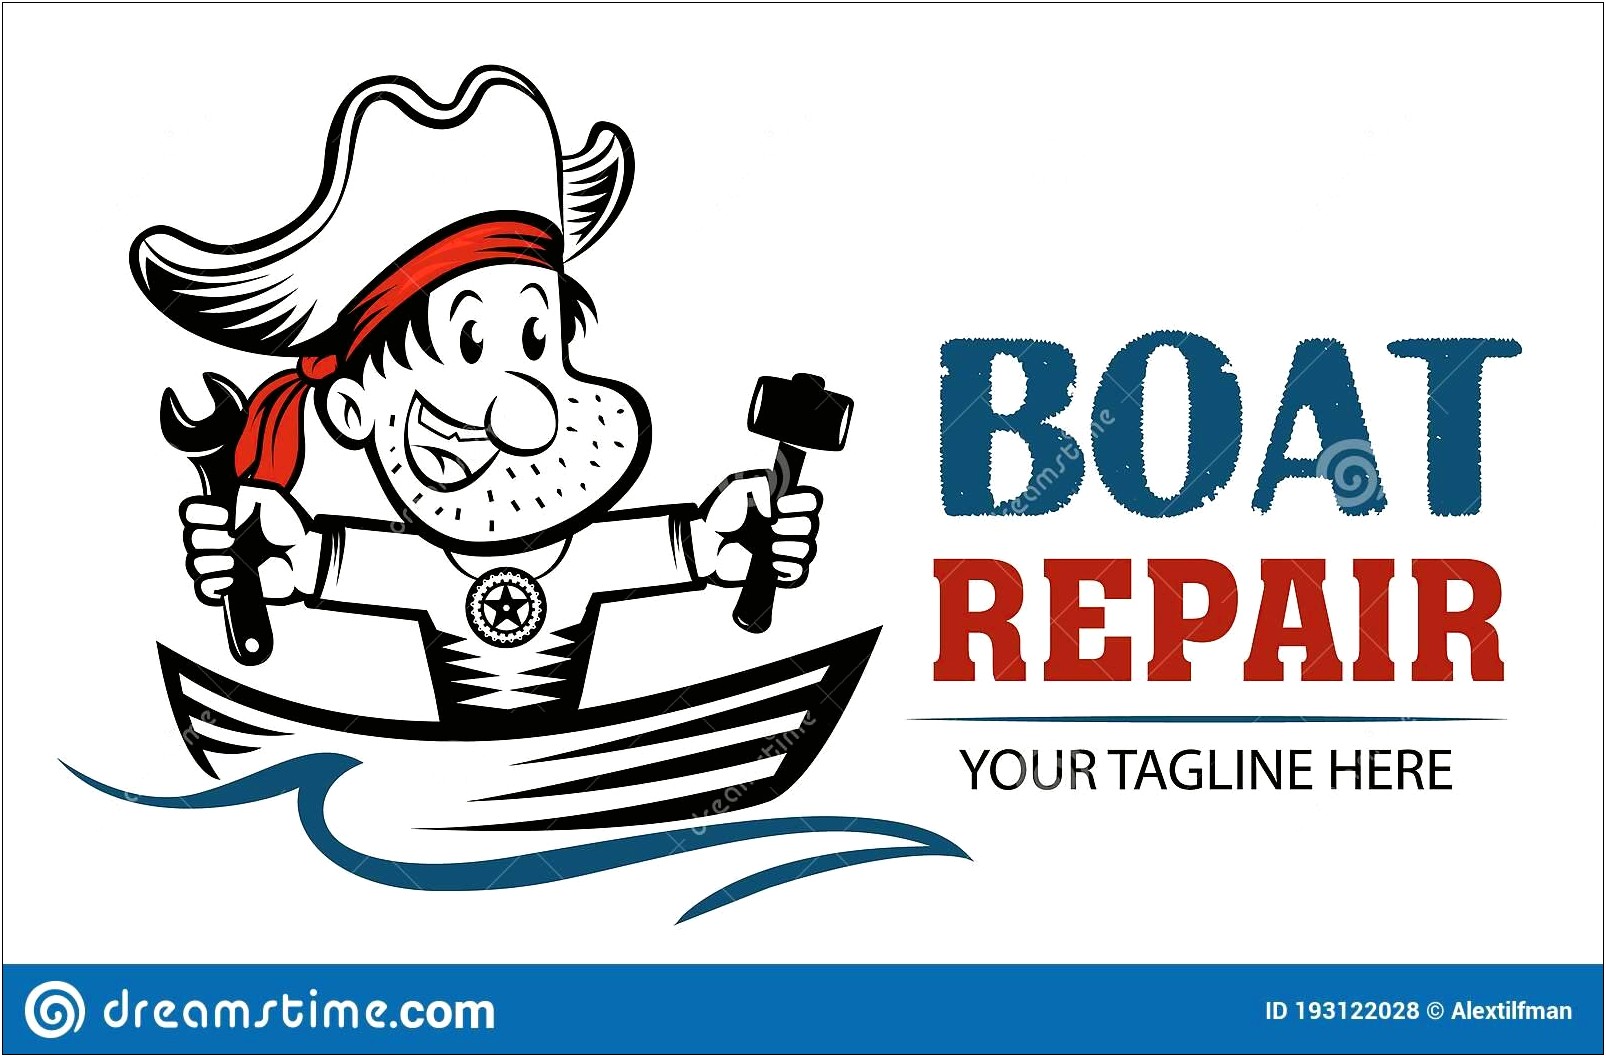 Boat Repair Shop Logo Template Free